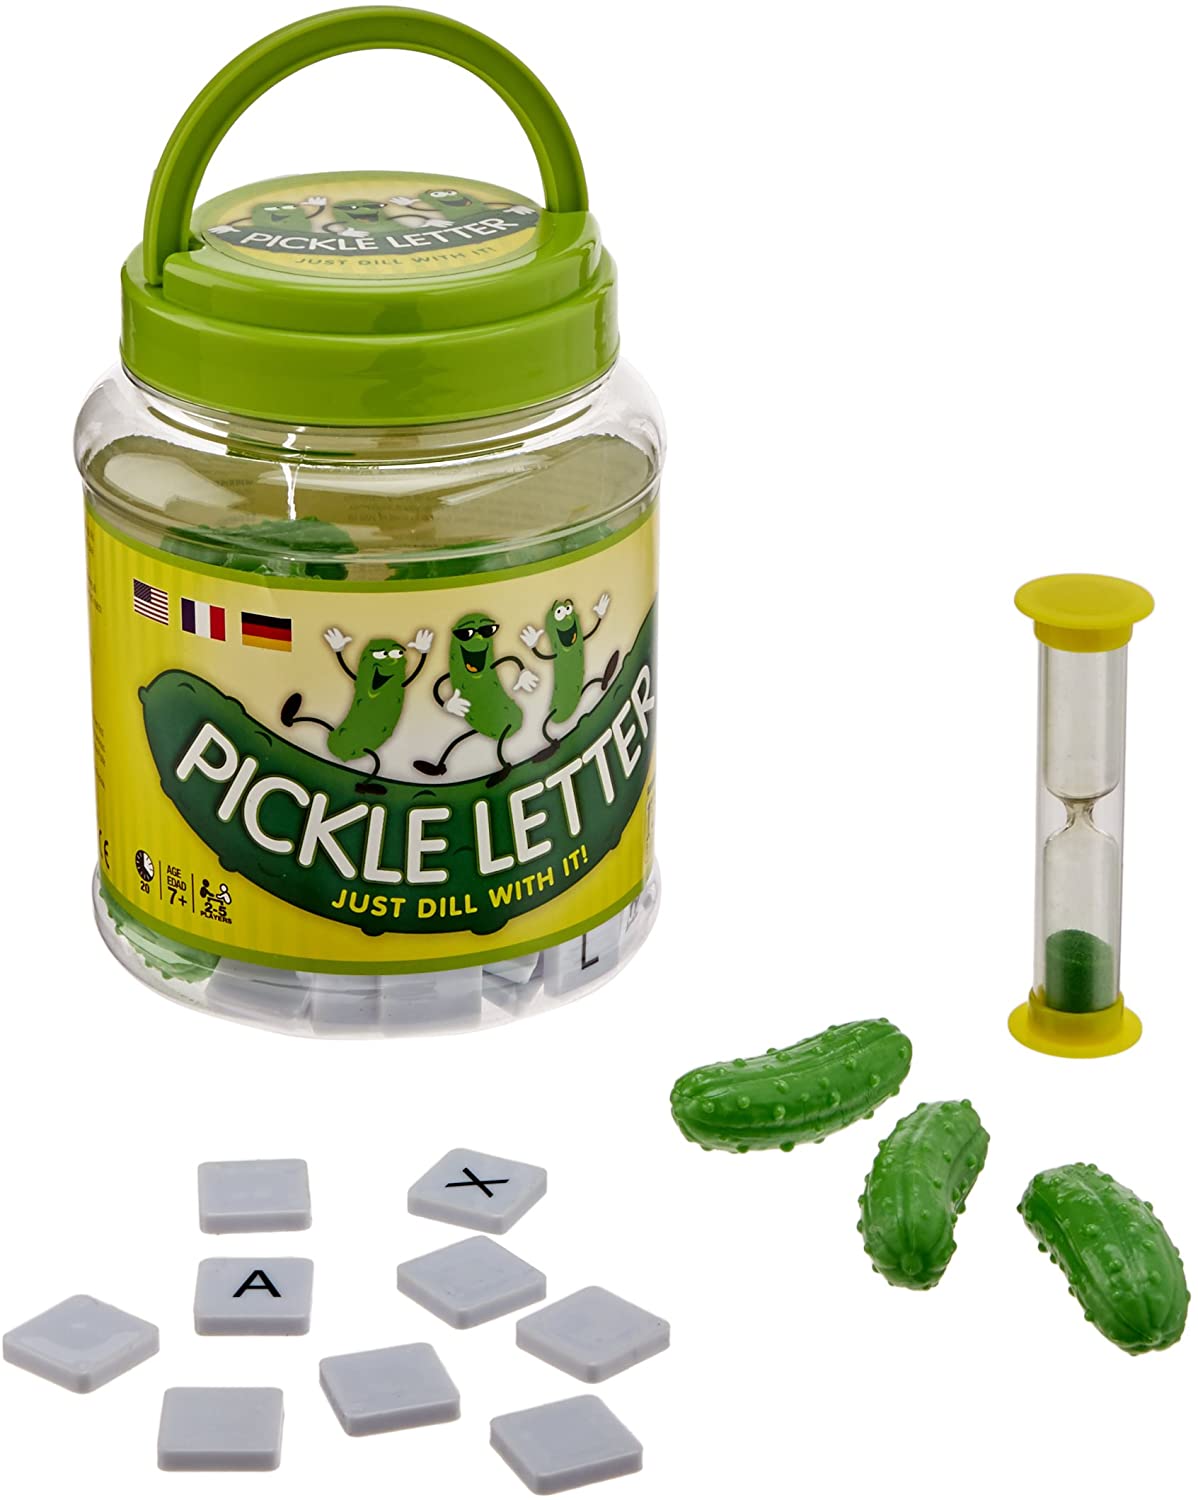 Pickle Letter